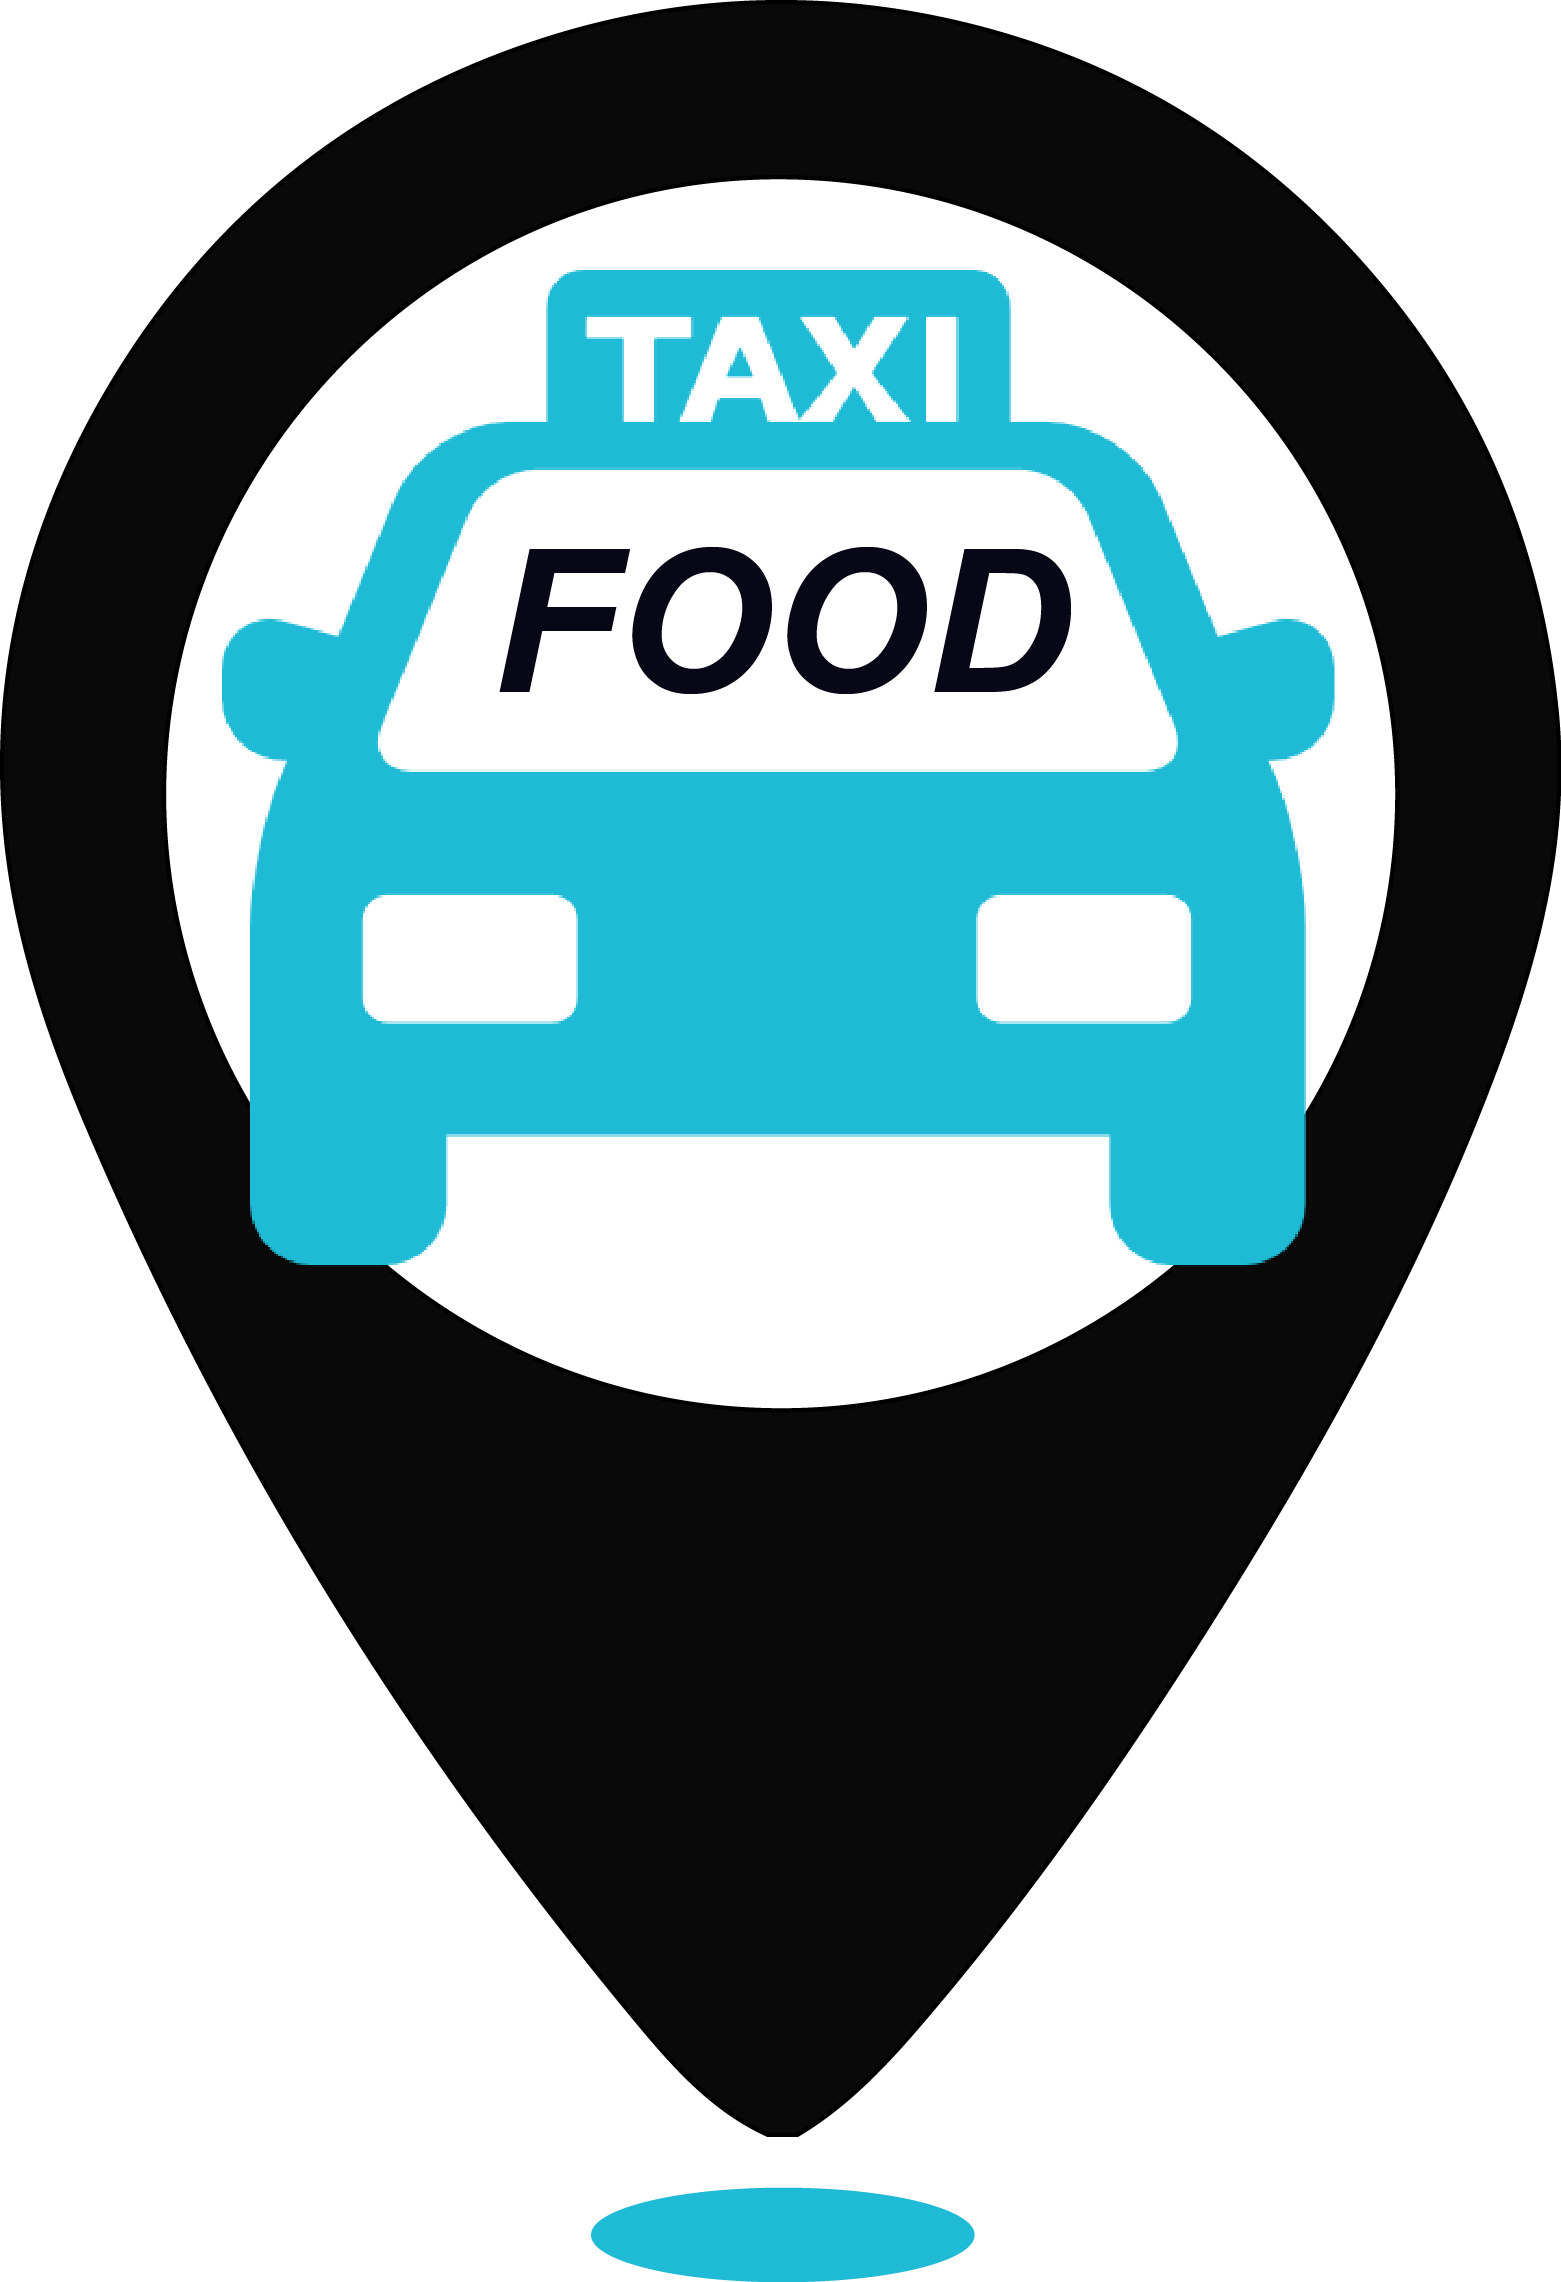 Фуд такси доставка. Логотип такси. Фуд такси. Taxi food логотип. Такси еда СПБ.